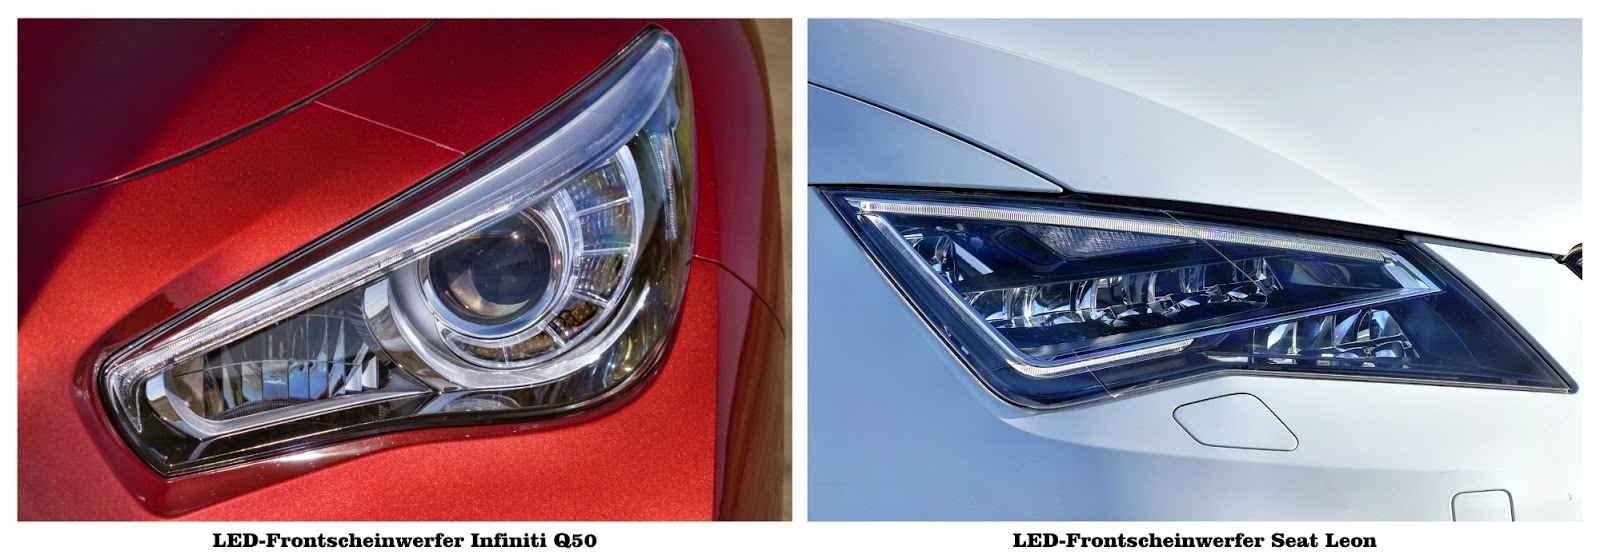 LED-Scheinwerfer Infiniti Q50 & Seat Leon | Photo © Hersteller